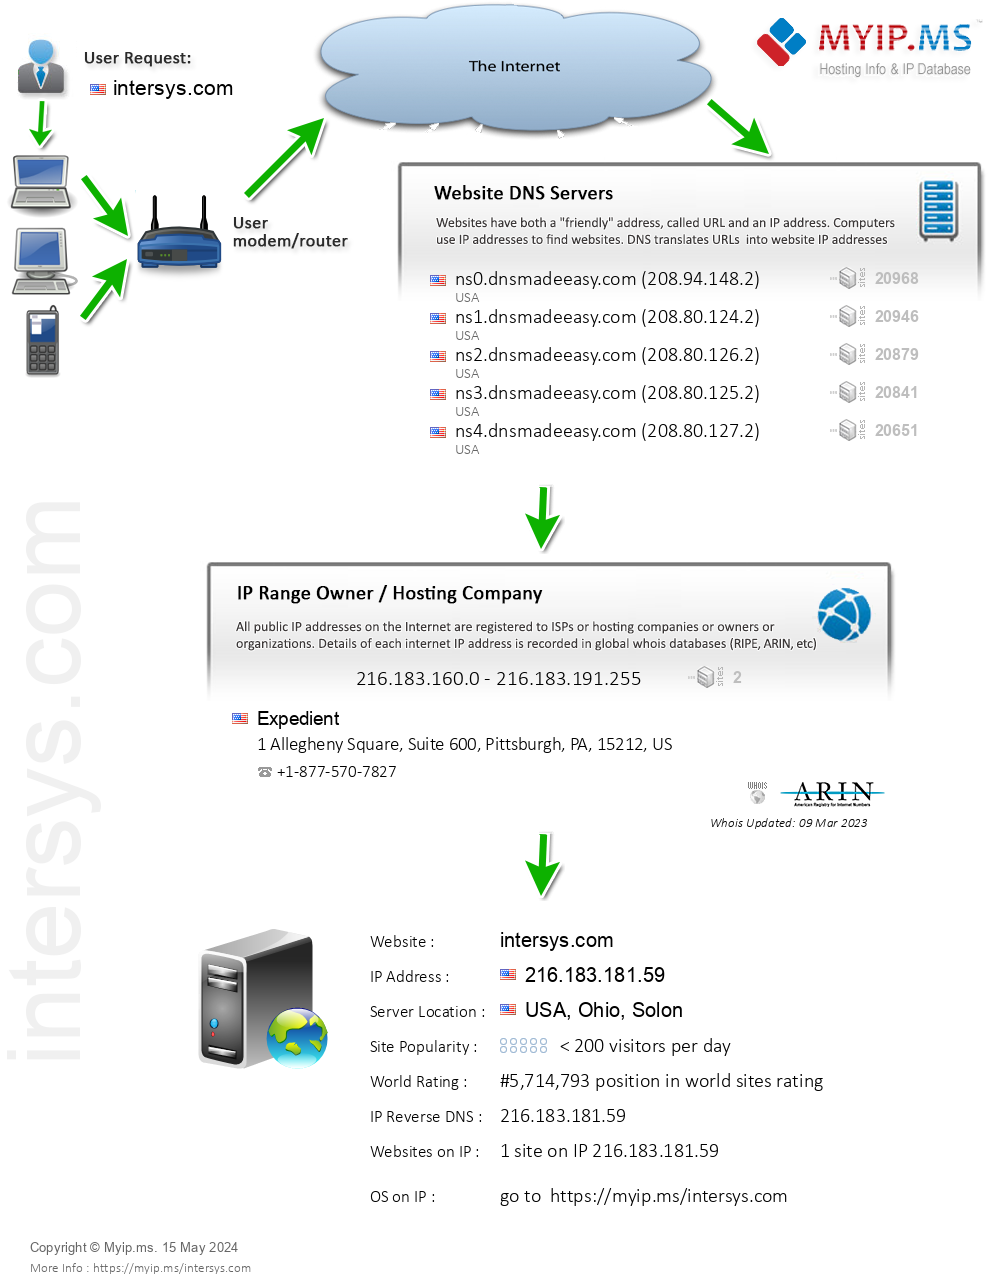 Intersys.com - Website Hosting Visual IP Diagram